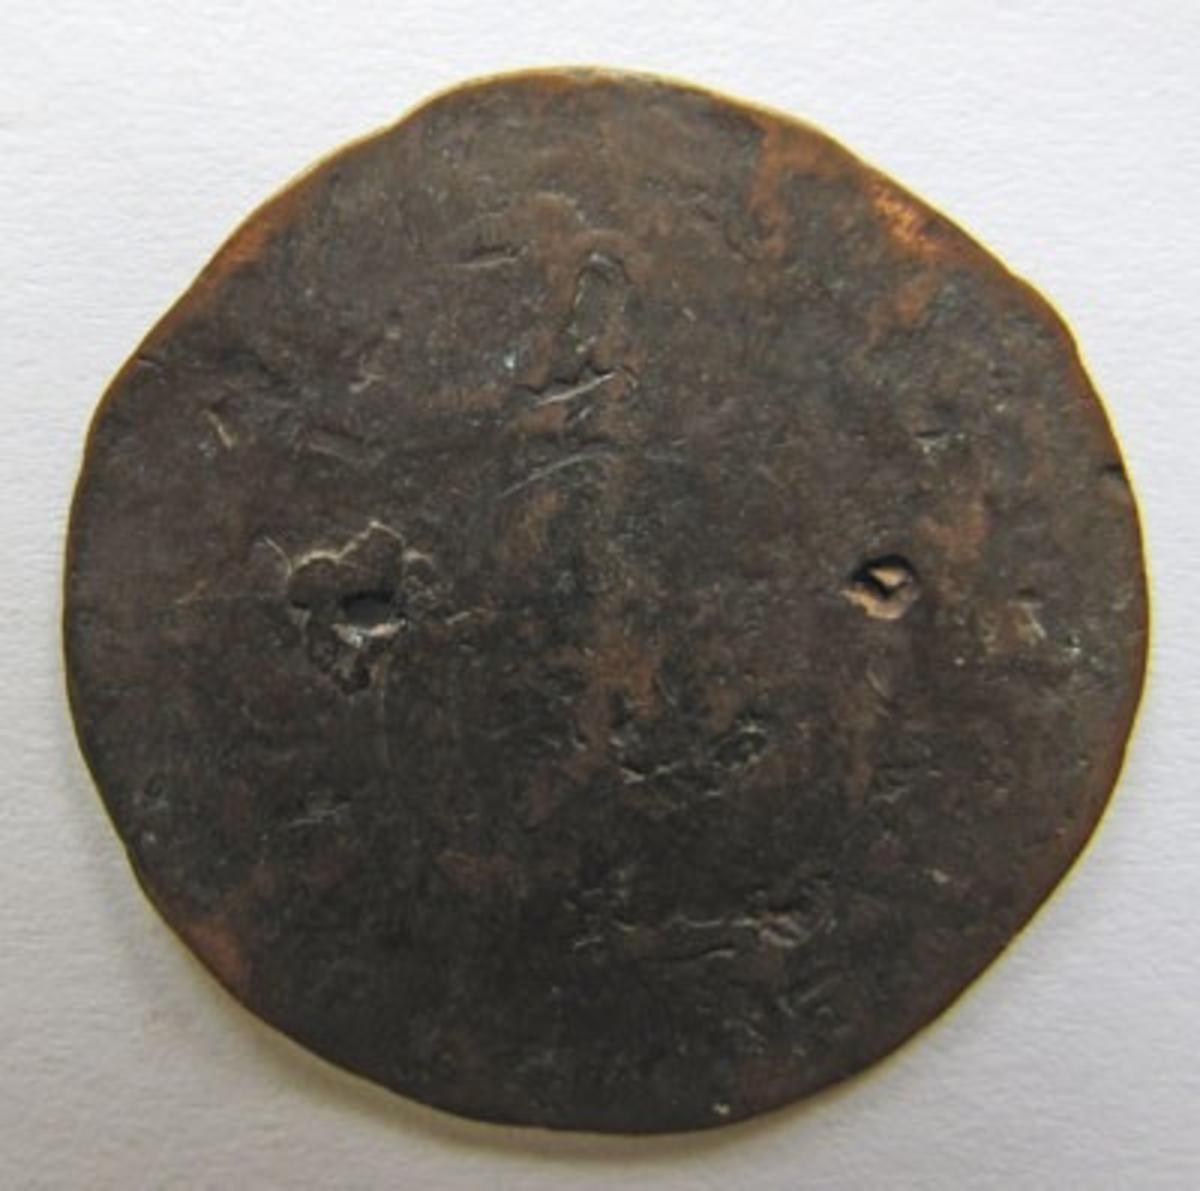 Karl XIV Johan, 1/4 skilling kopparmynt. Präglat i Avesta. Otydligt årtal. Myntet är perforerat på två ställen.